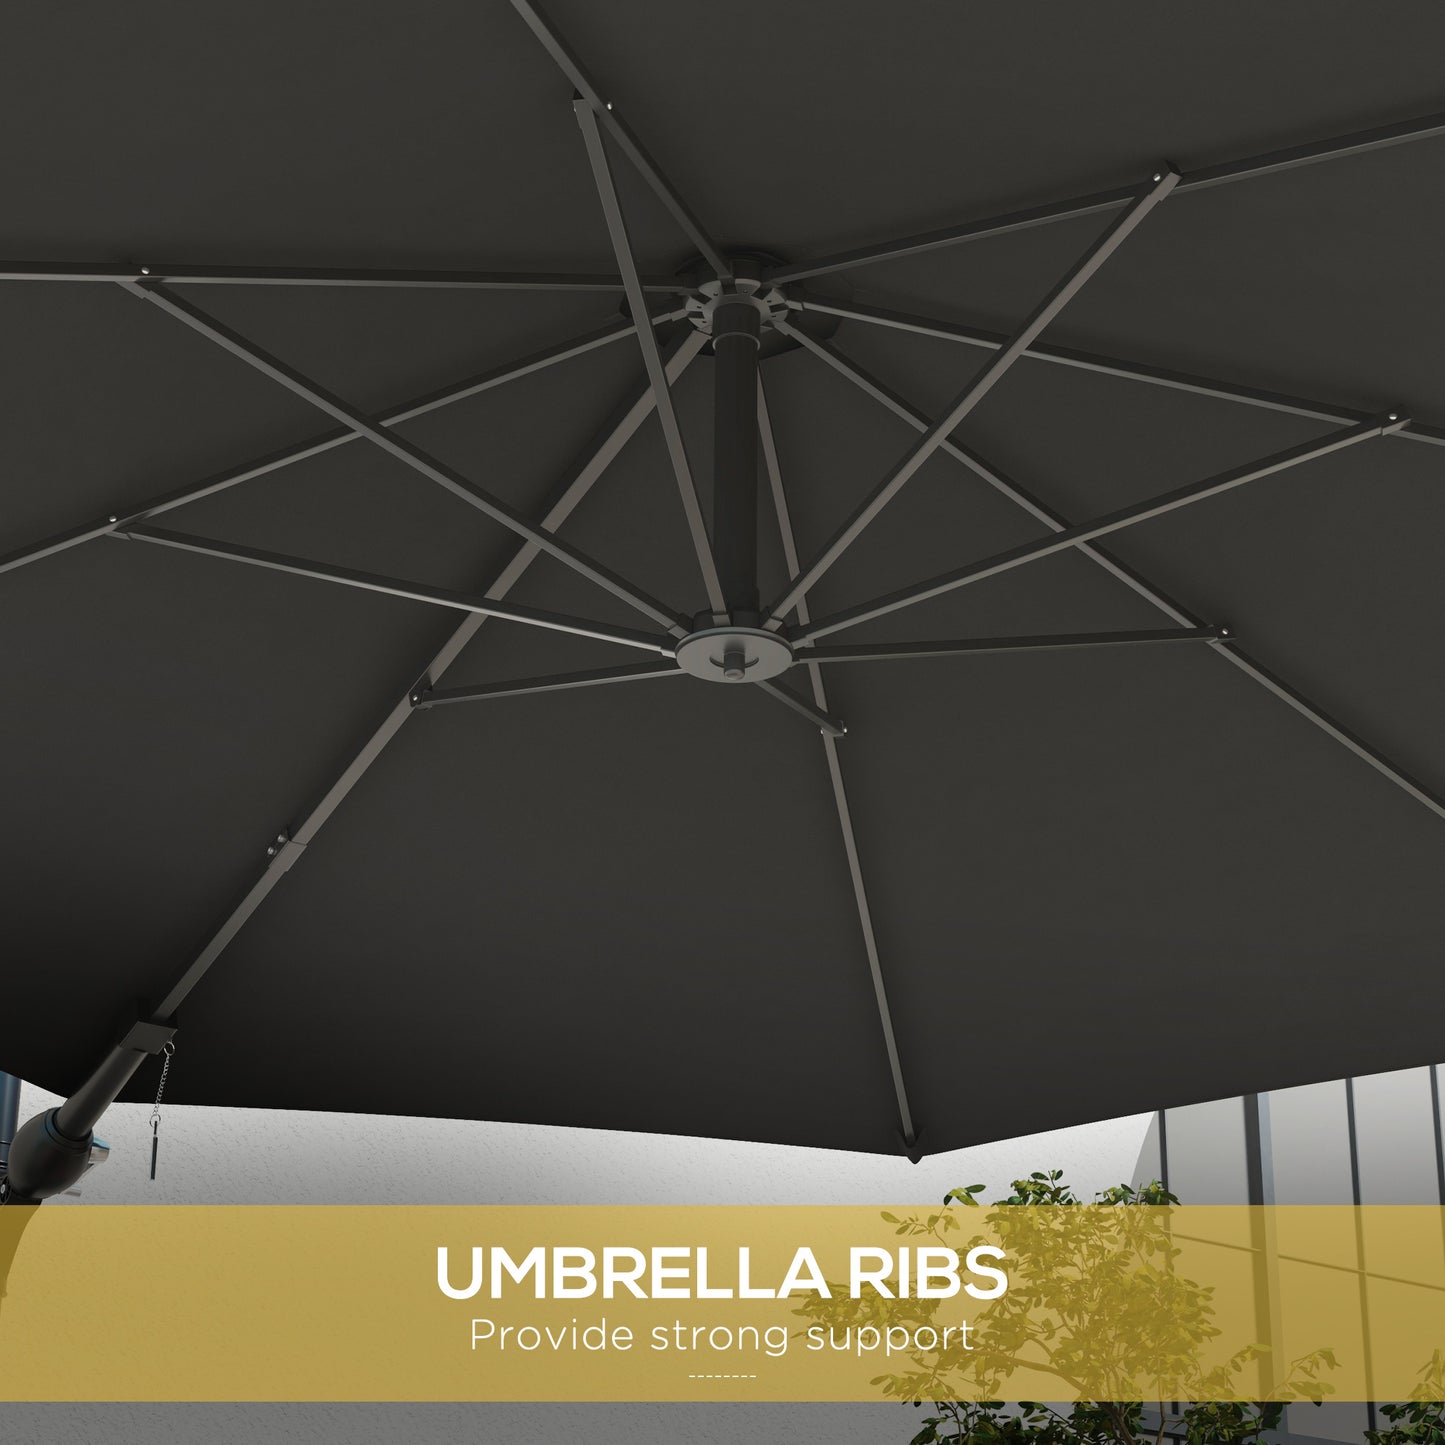 Outsunny Wall Mounted Umbrella with Vent, Garden Patio Parasol Umbrella Sun Shade Canopy, Charcoal Grey